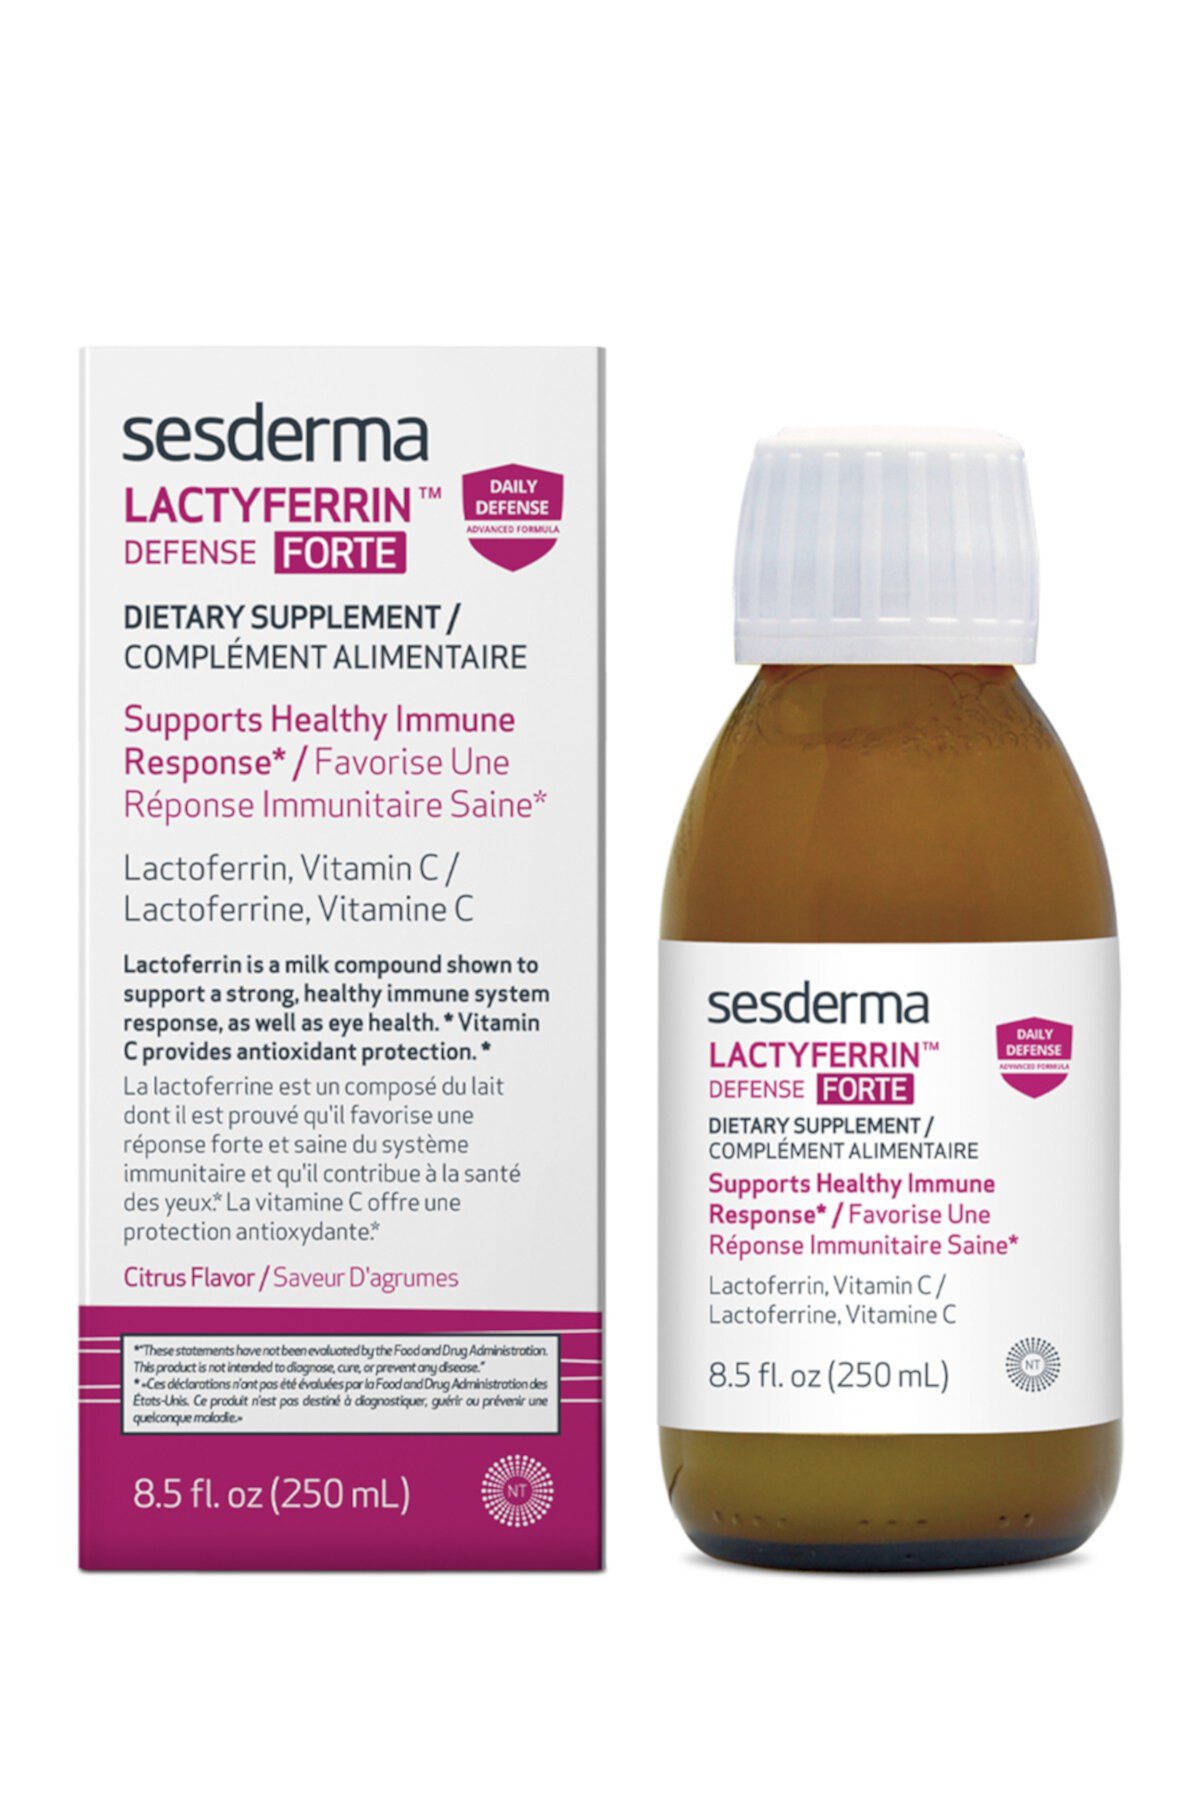 Пищевая добавка LACTYFERRIN DEFENSE FORTE Sesderma